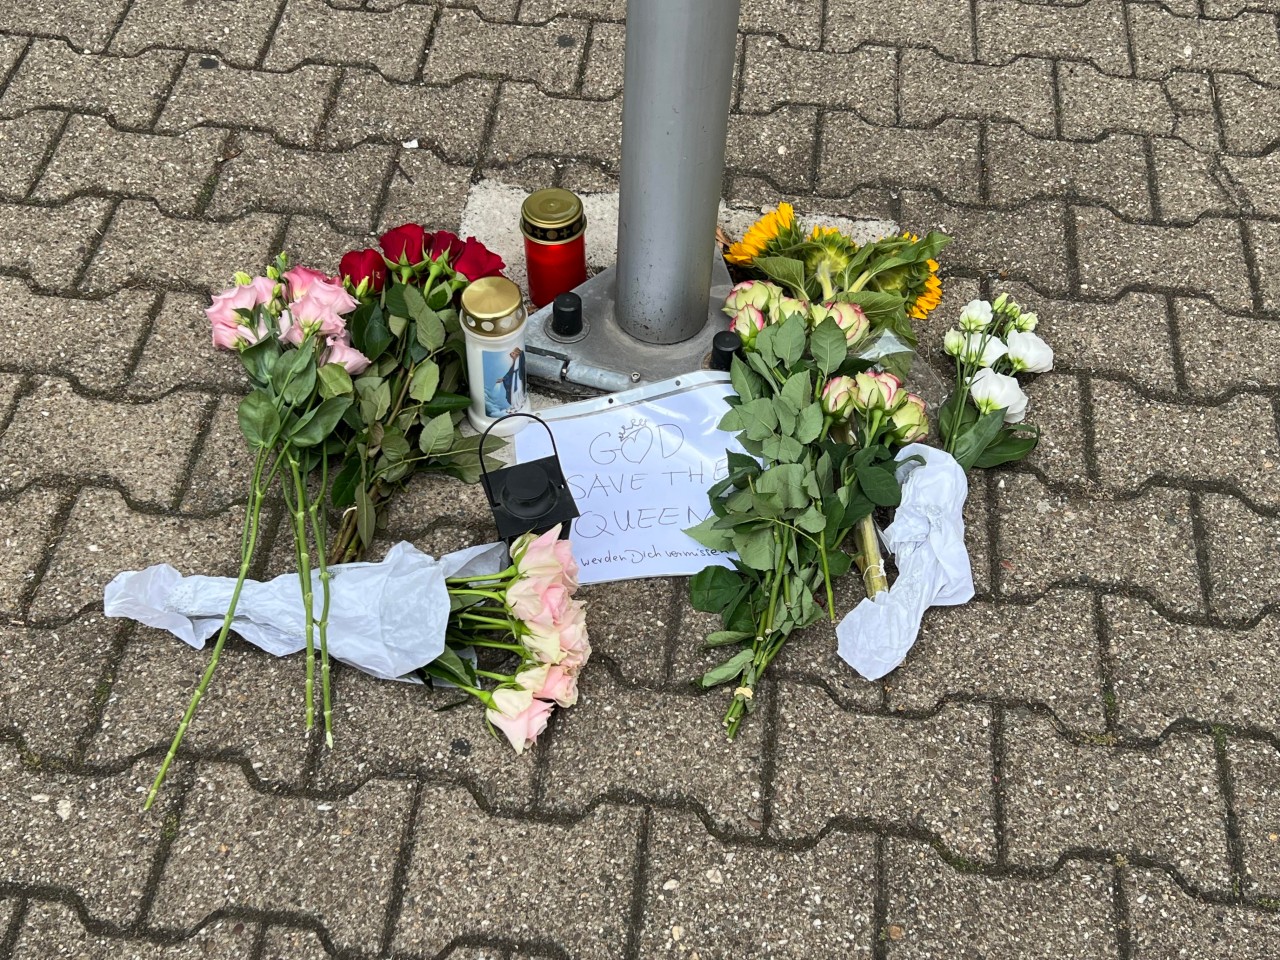 Vor dem britischen Konsulat in Düsseldorf wurden Blumen niedergelegt.